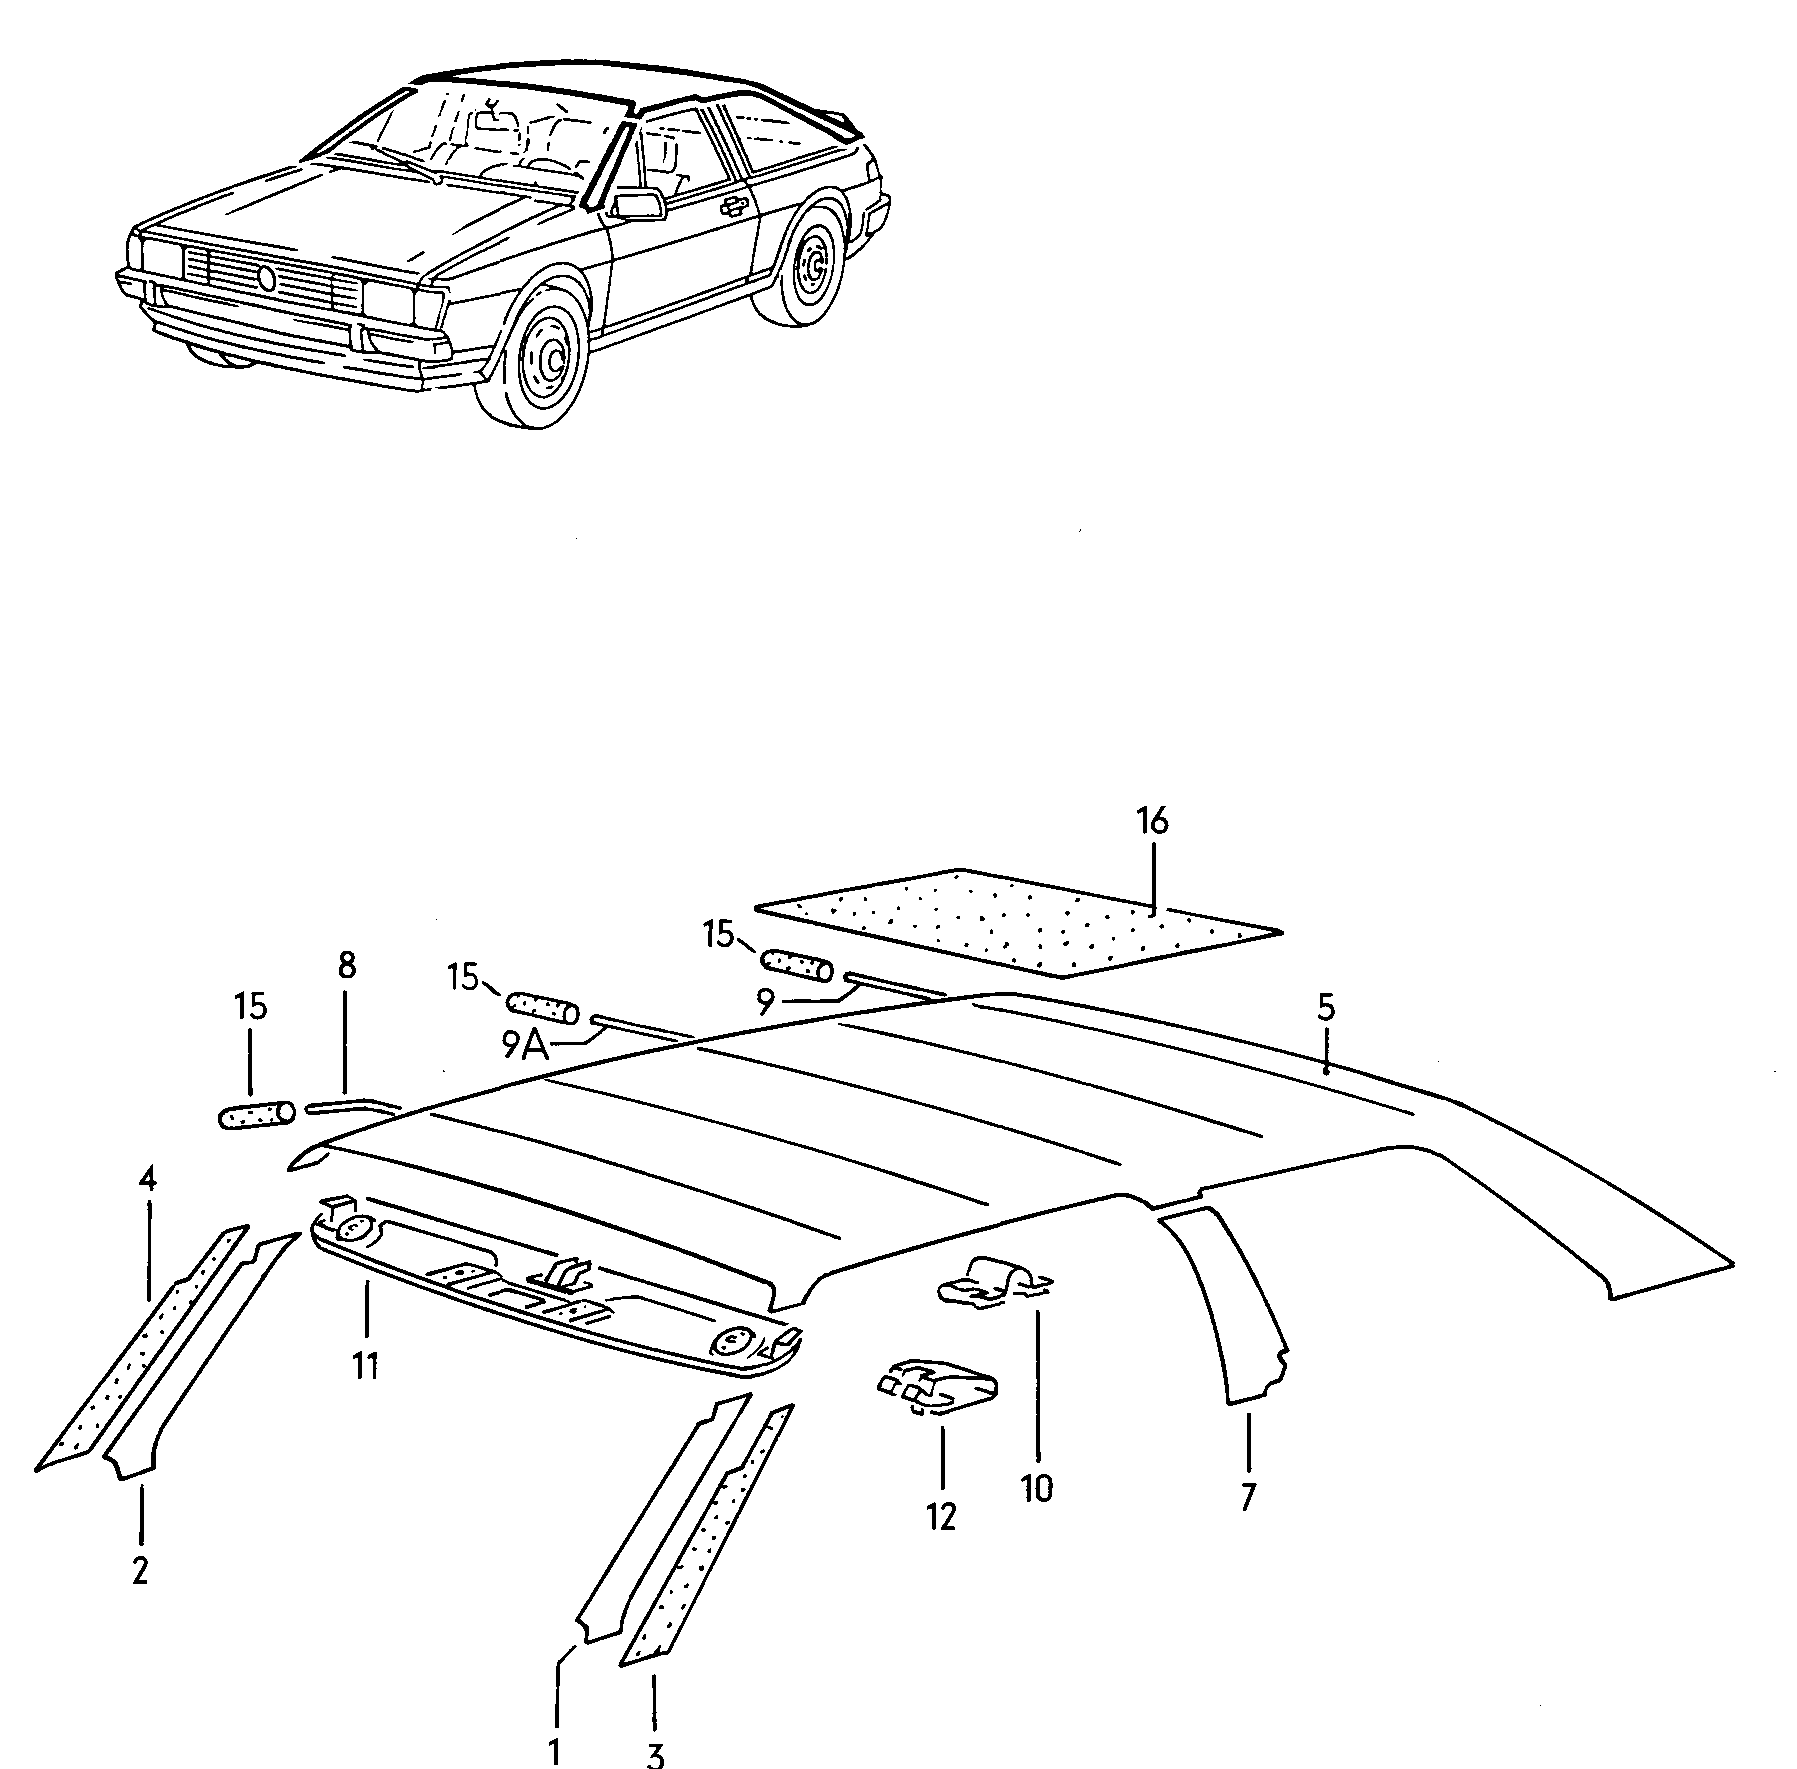 车顶和立柱用
护板; 车顶及车柱用减震垫
.; F 53-B-200 001>> - Scirocco(SCI)  